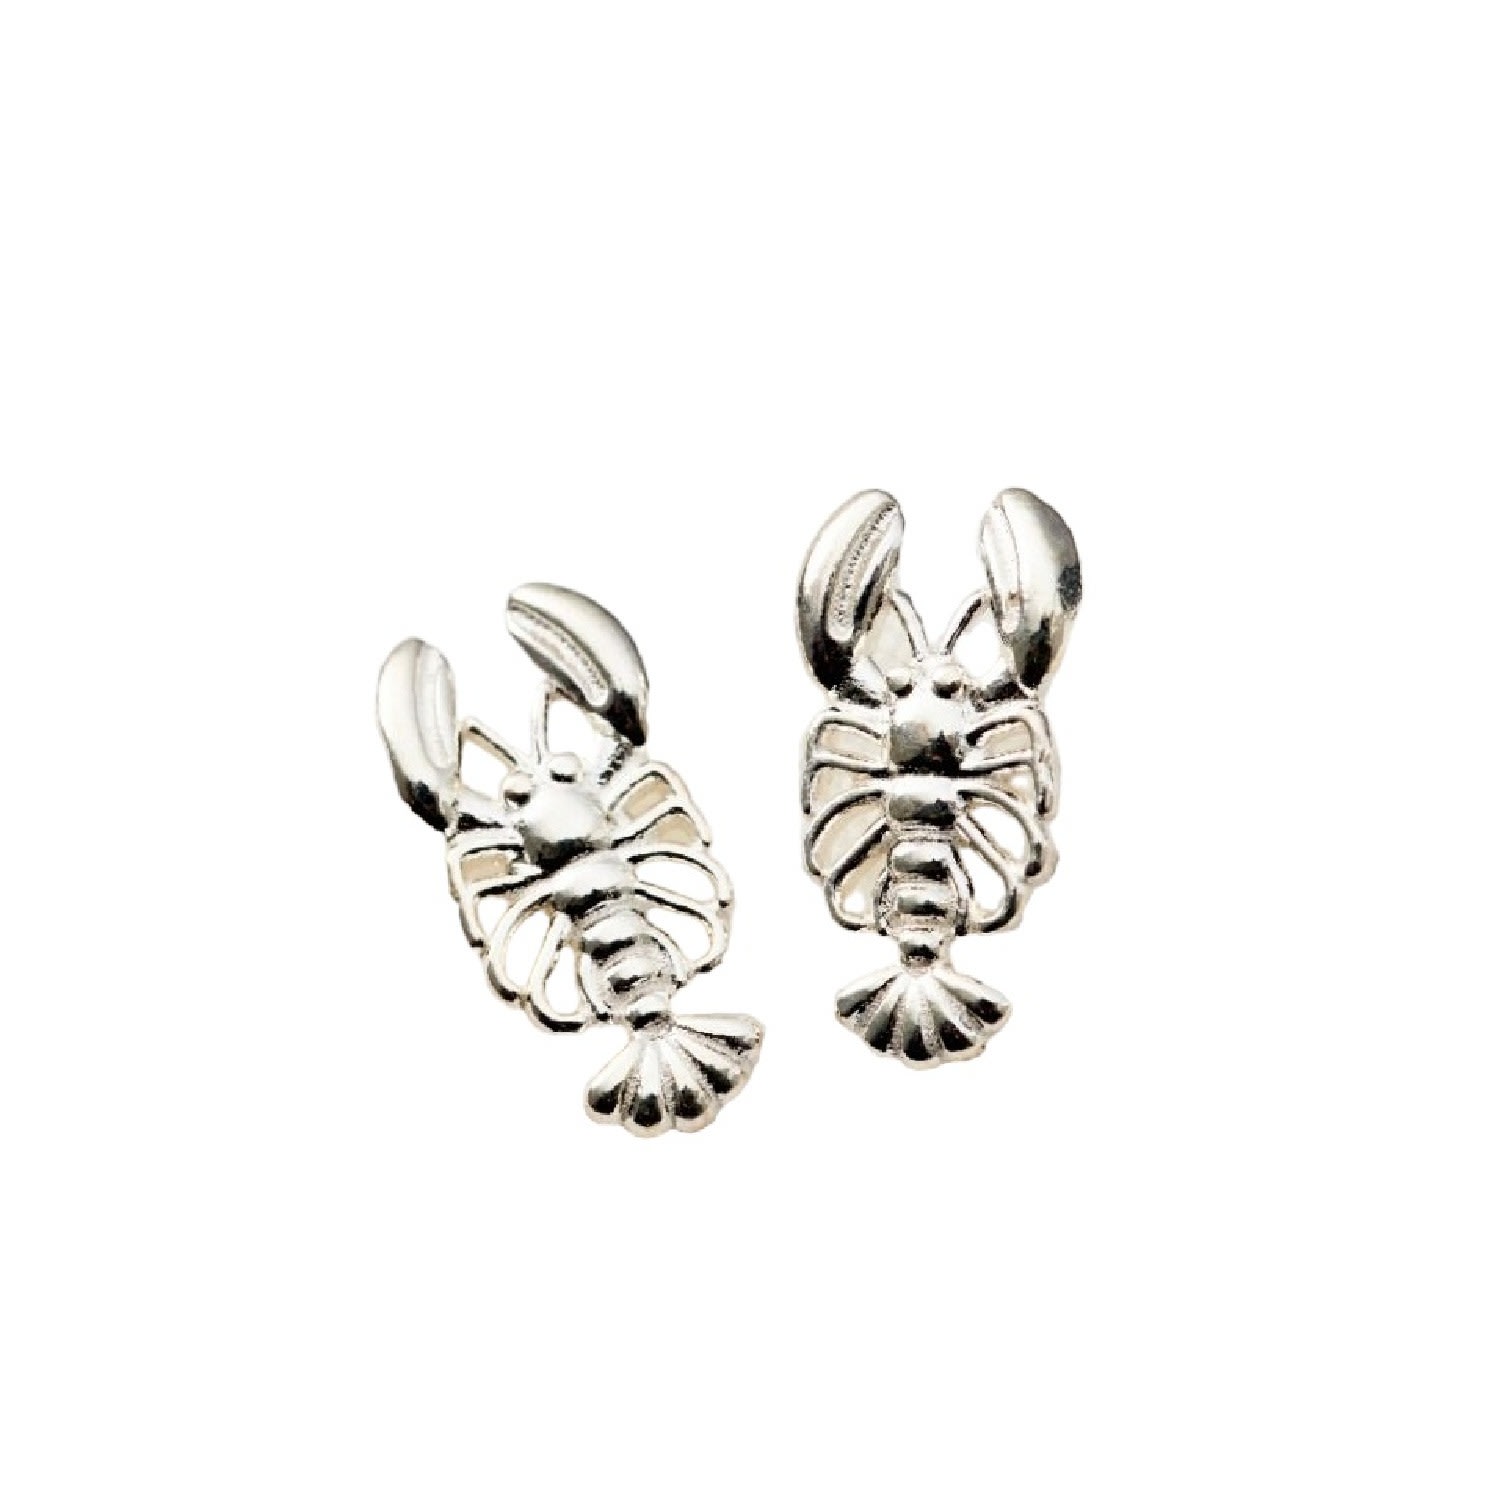 Posh Totty Designs Women's Sterling Silver Lobster Stud Earrings In White